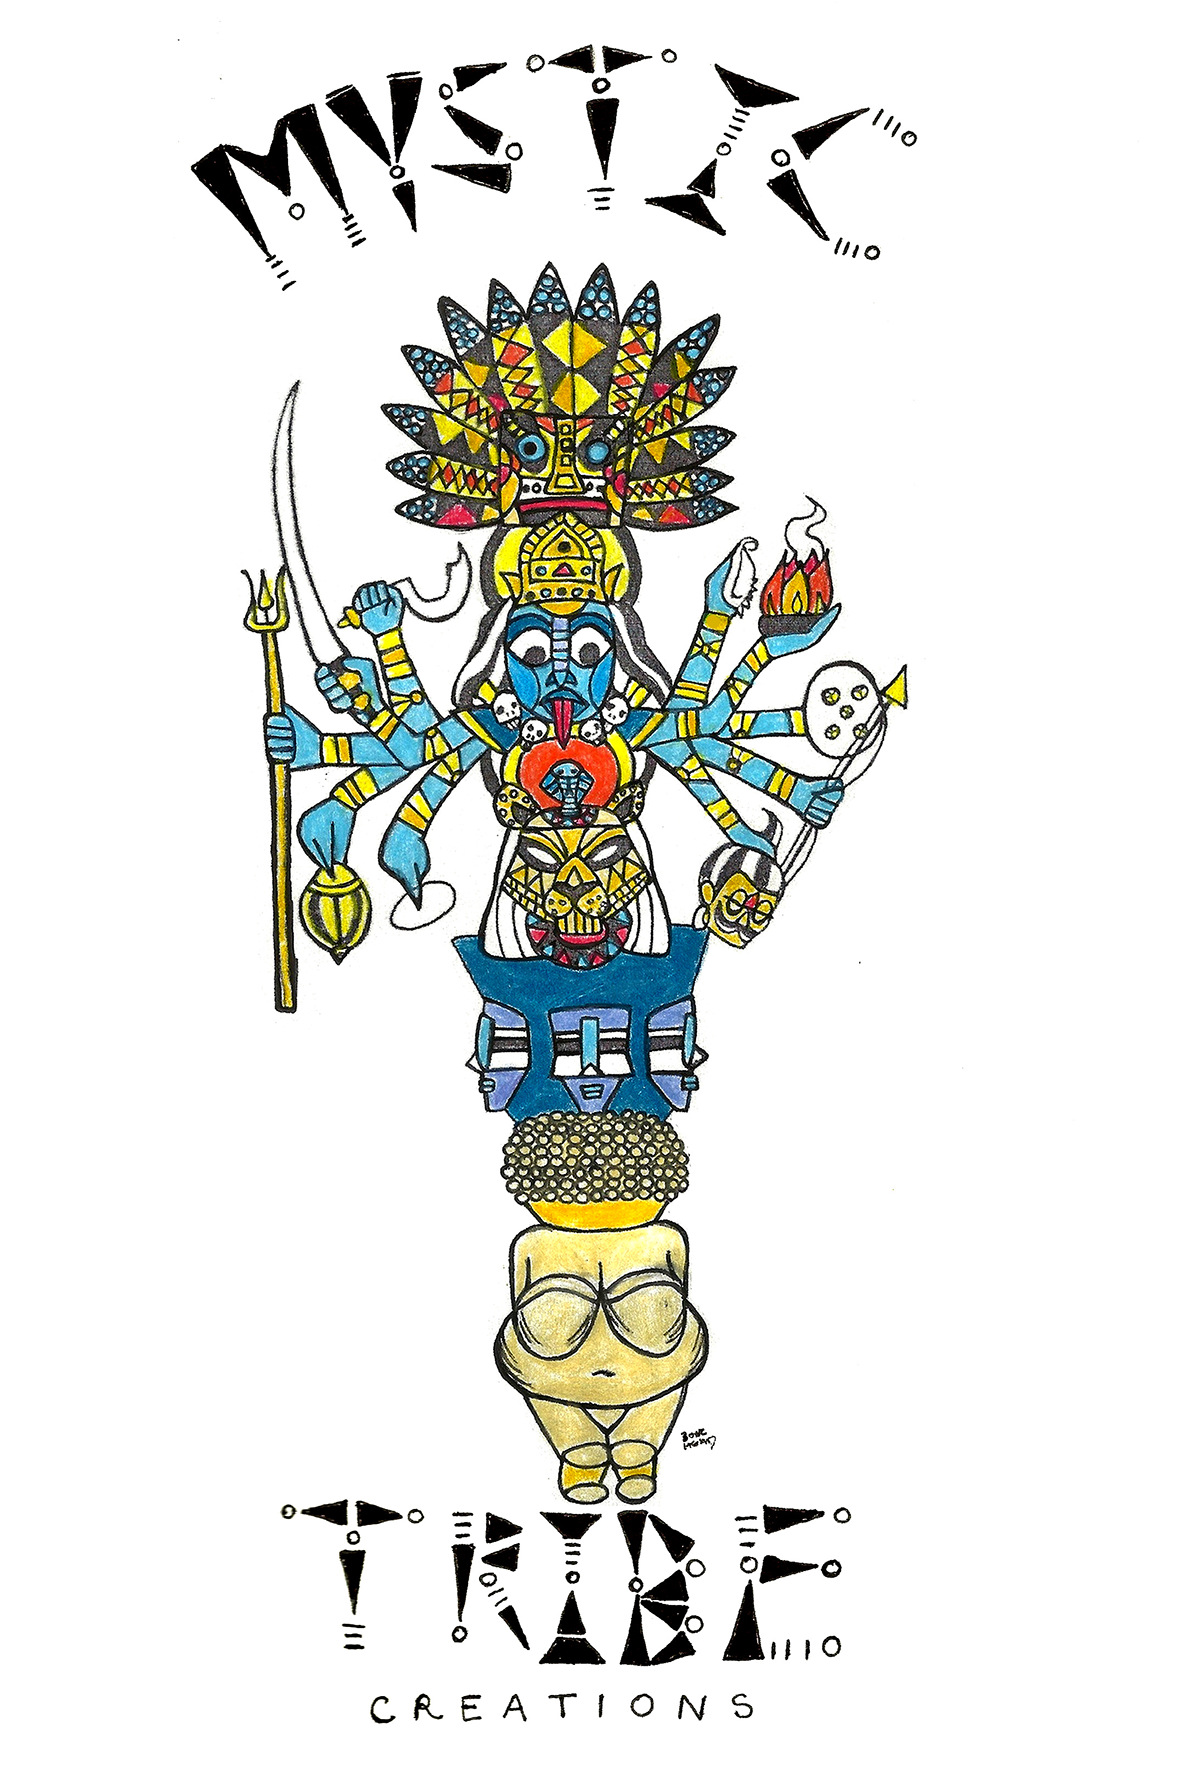 goddess totem pole Spiritual Art Logo Design sehkmet kali venus of willendorf Kachina muses